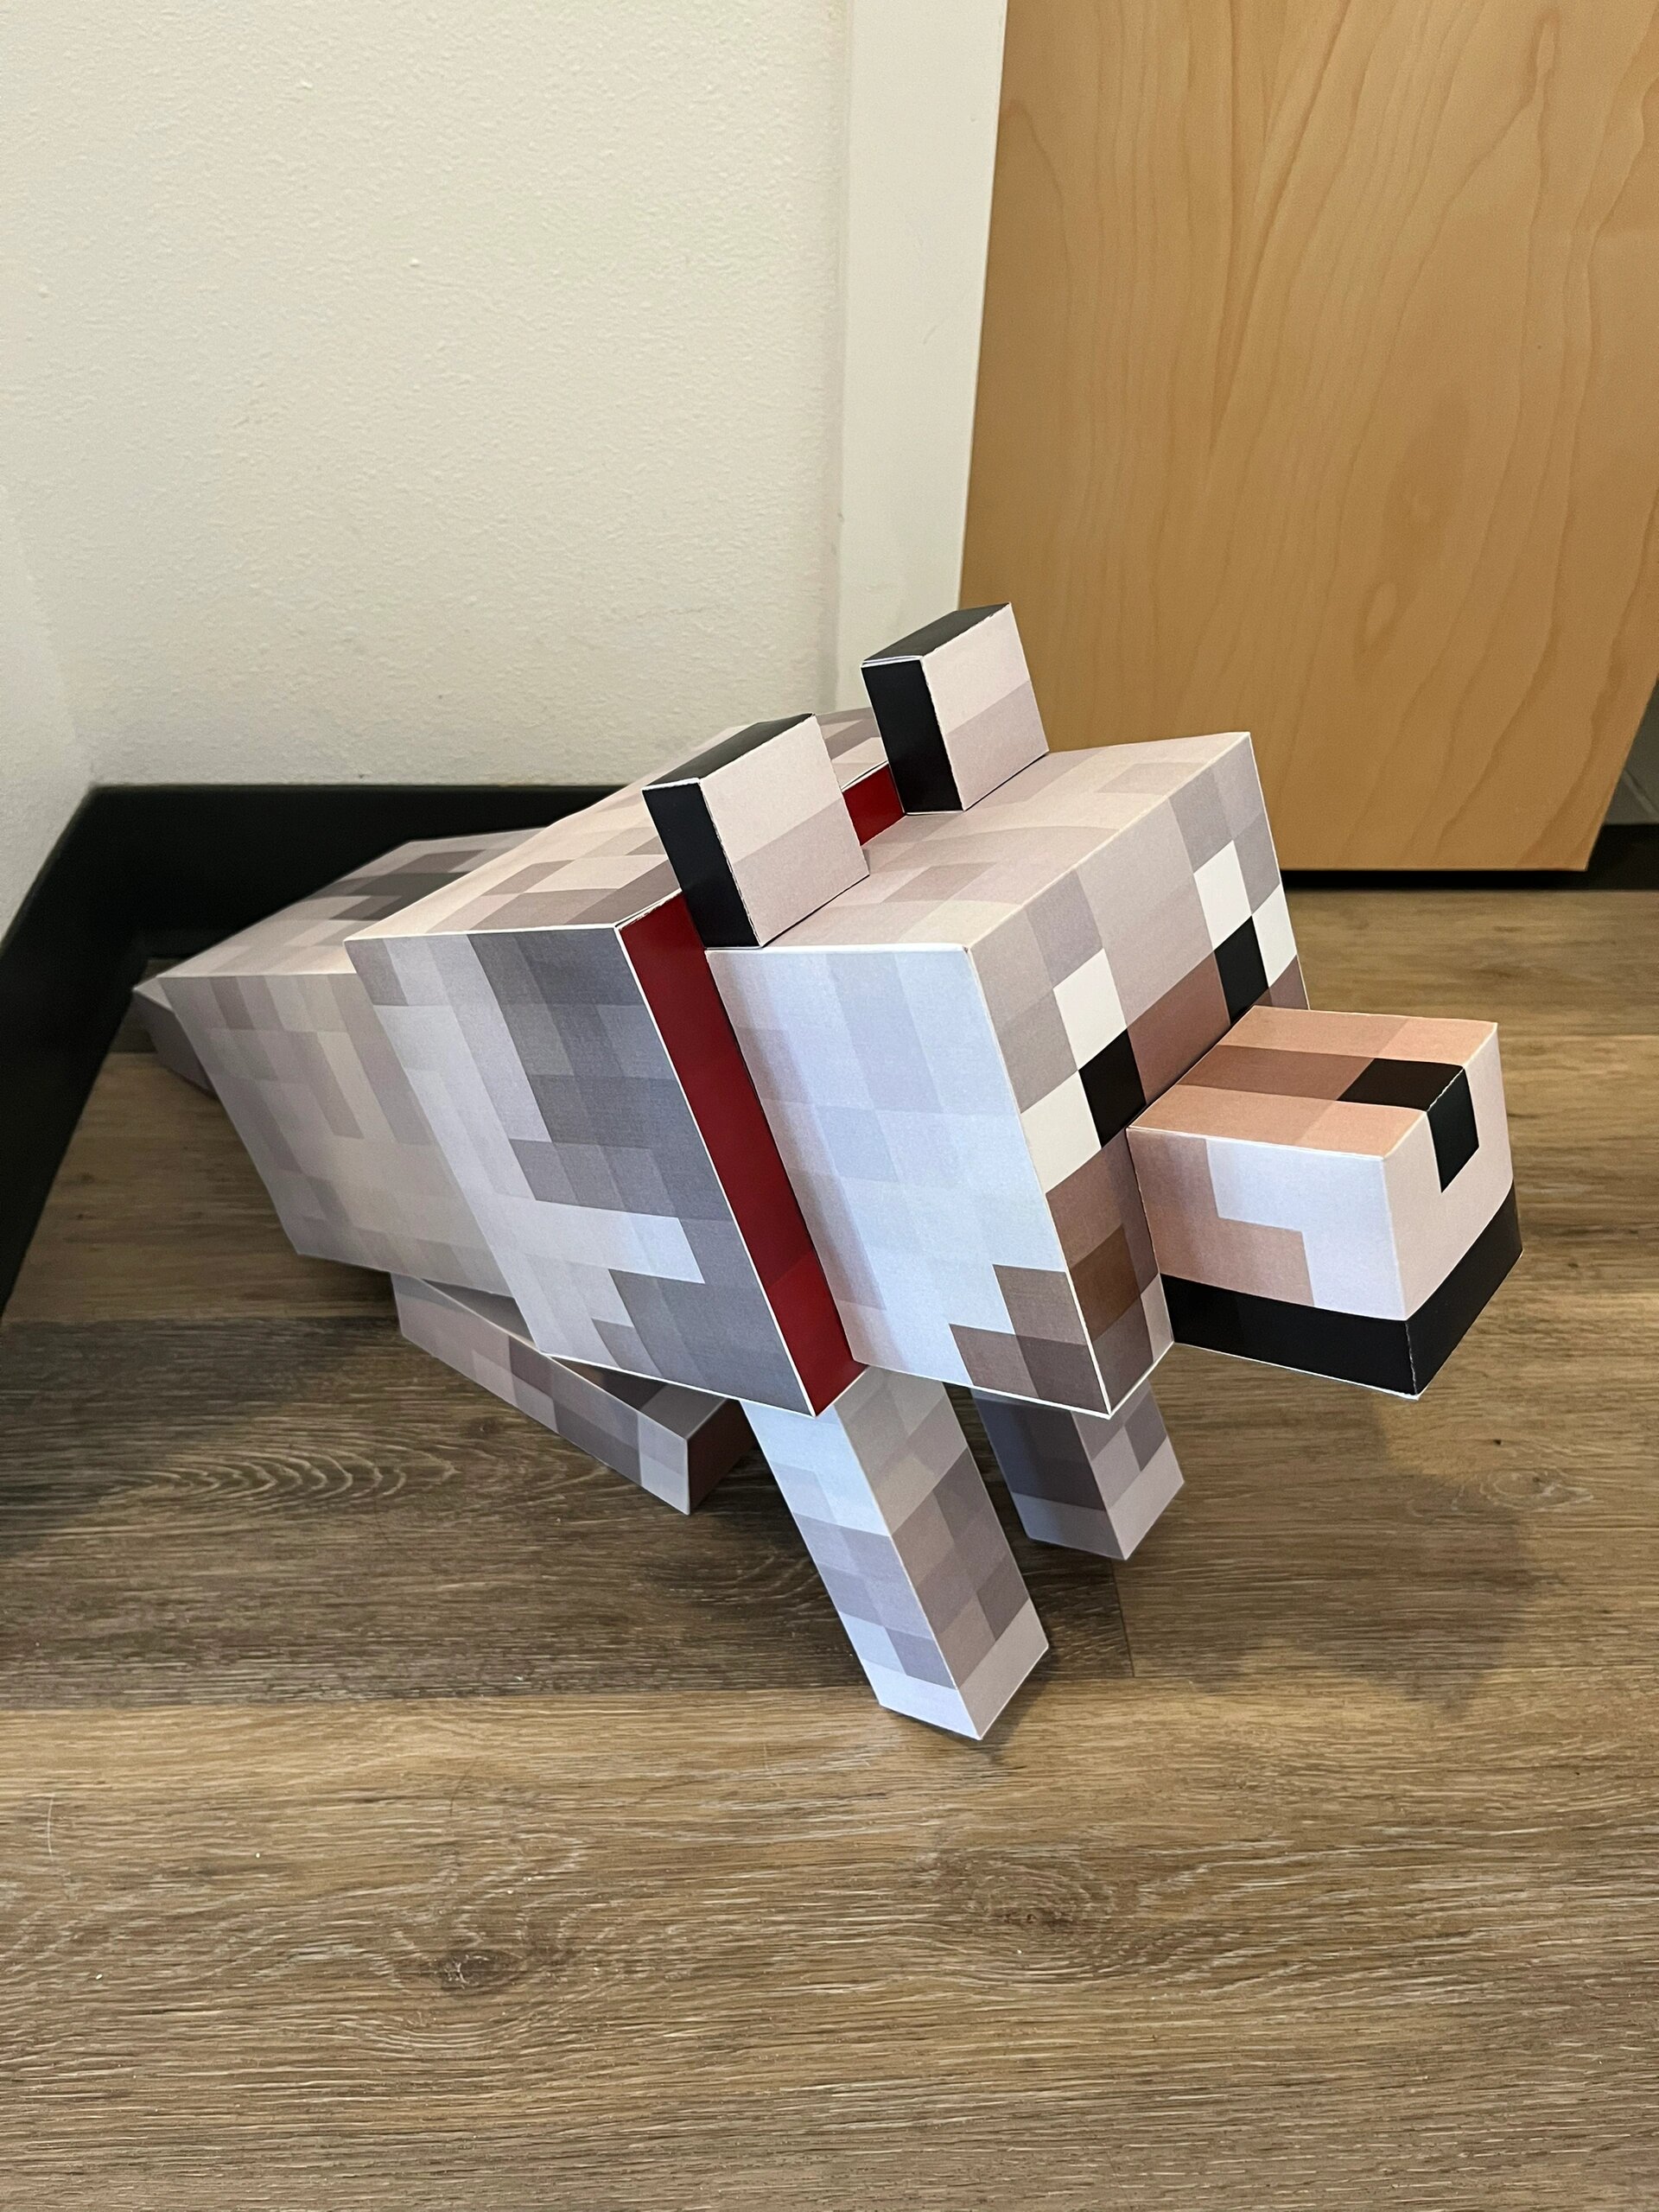 我的世界纸膜方块狗1:1狼手工纸模型立体纸狐狸手工制作模型玩具